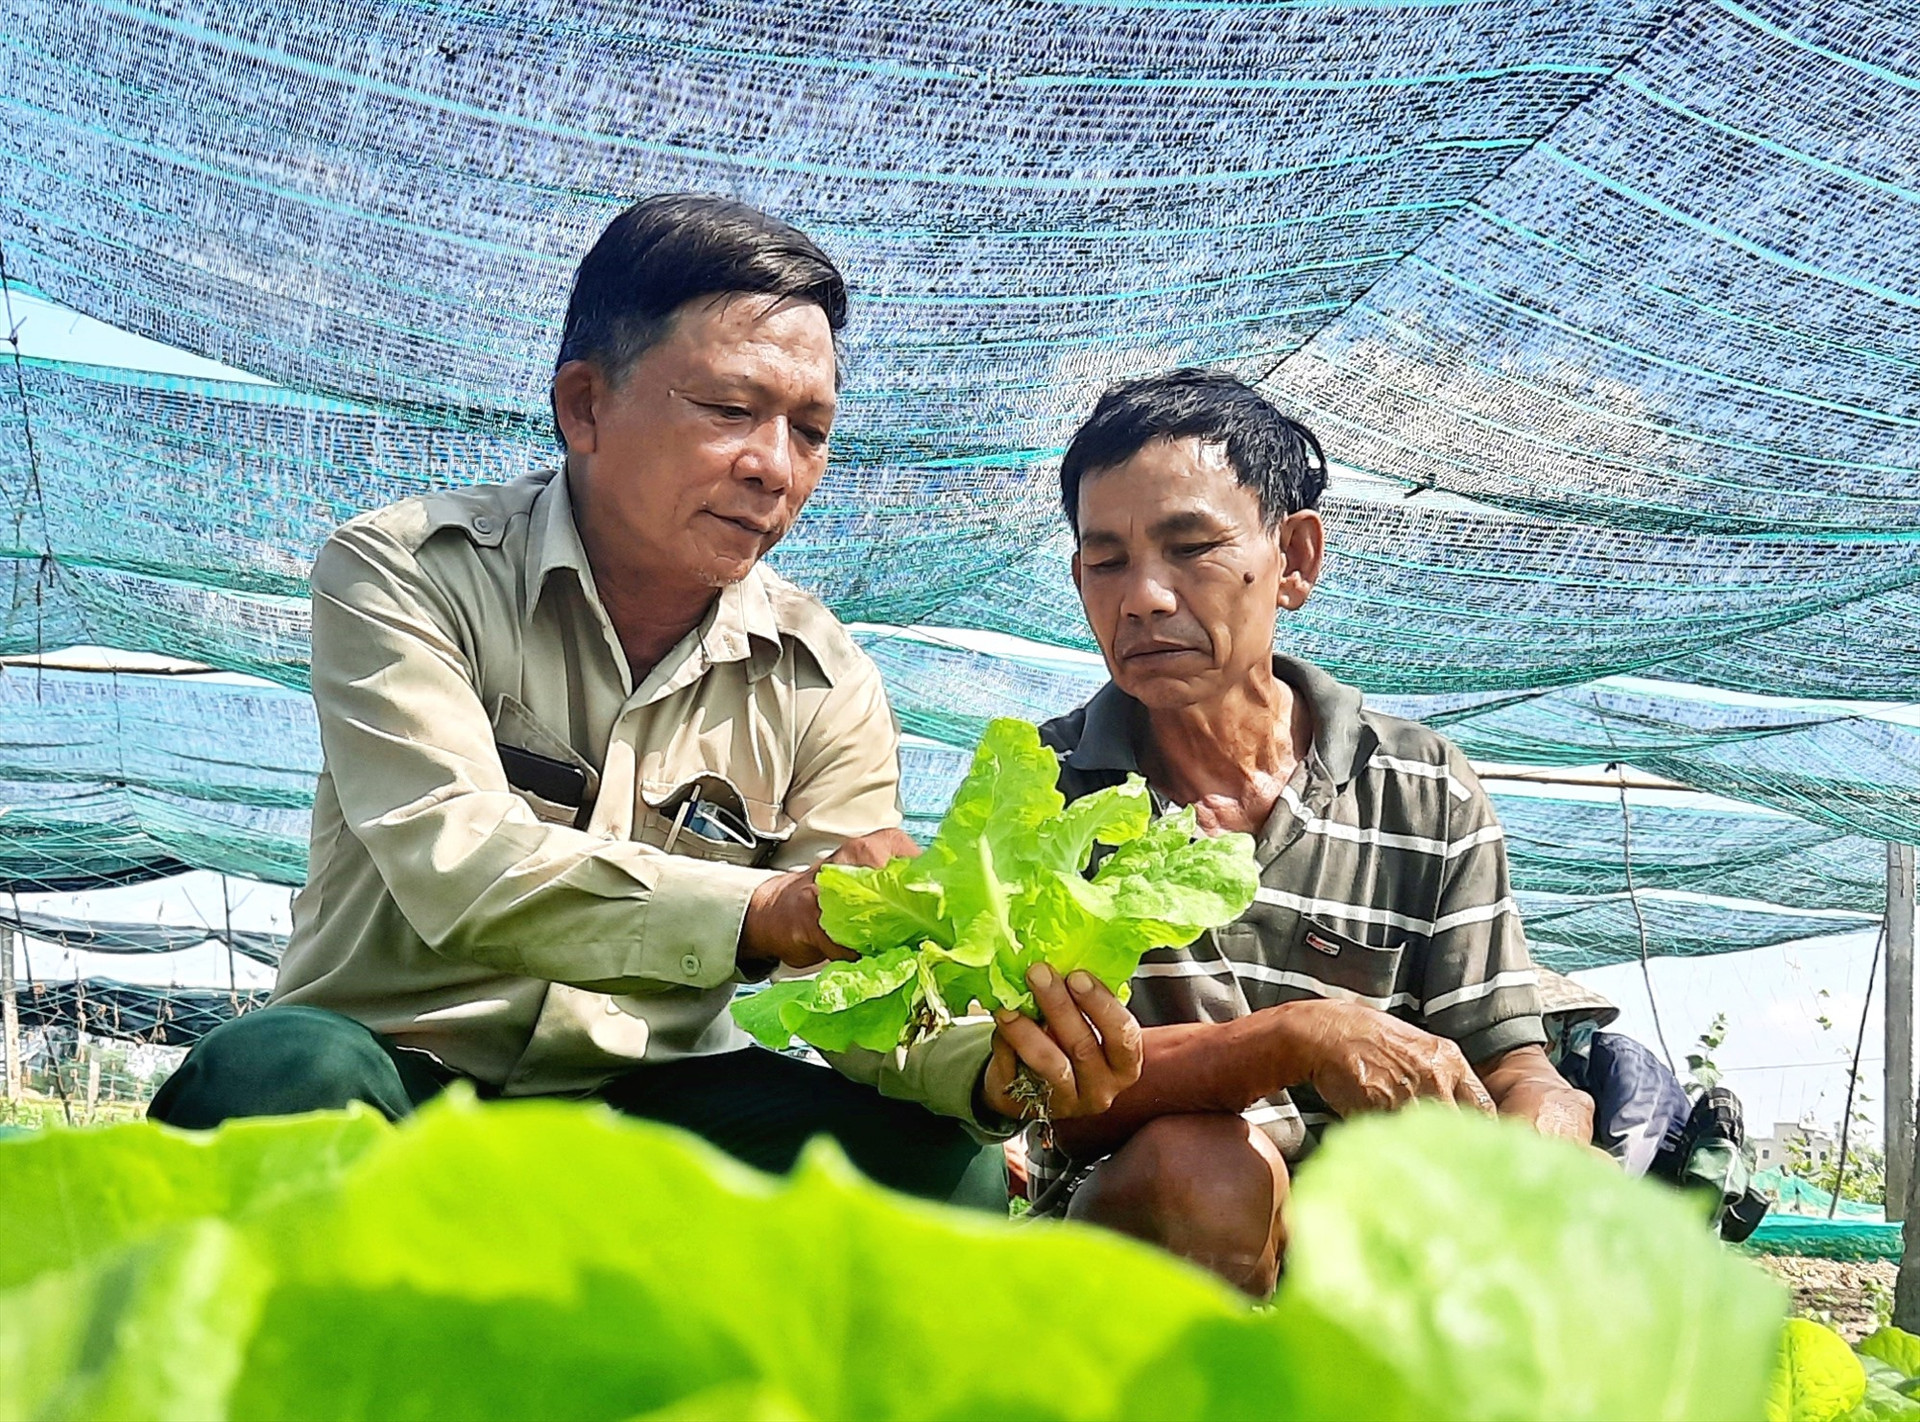 Cựu chiến binh Phạm Văn Phó (bên phải) có cuộc sống ổn định từ mô hình trồng rau sạch theo hướng hữu cơ. Ảnh: Đ.C